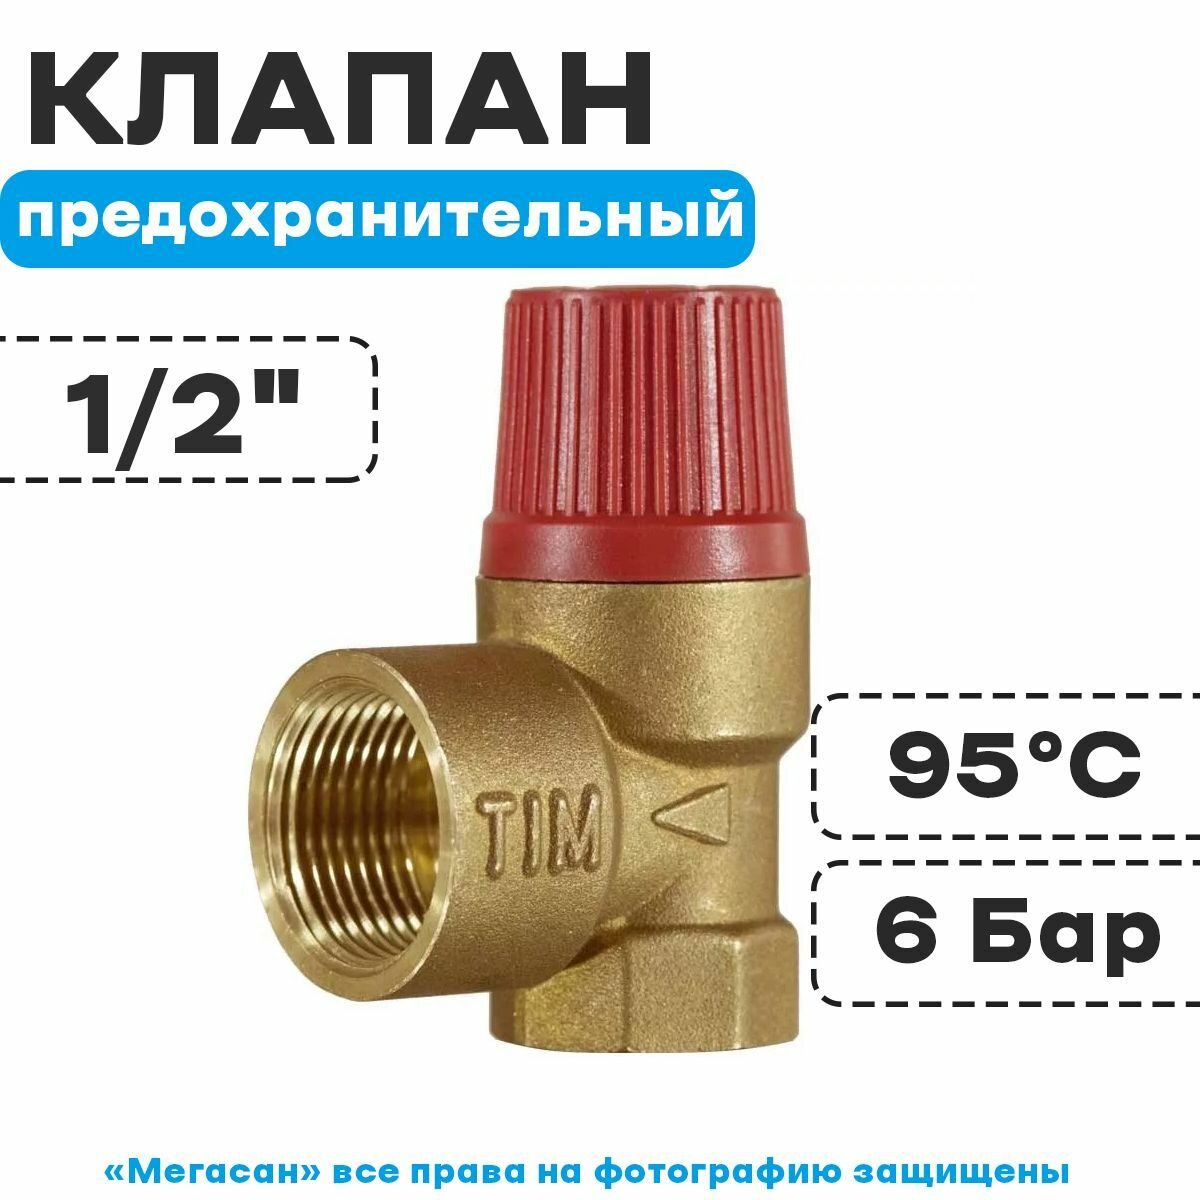 Предохранительный клапан, красный колпачок, 6 бар, 1/2" г-г, BL22FF-K-6 bar